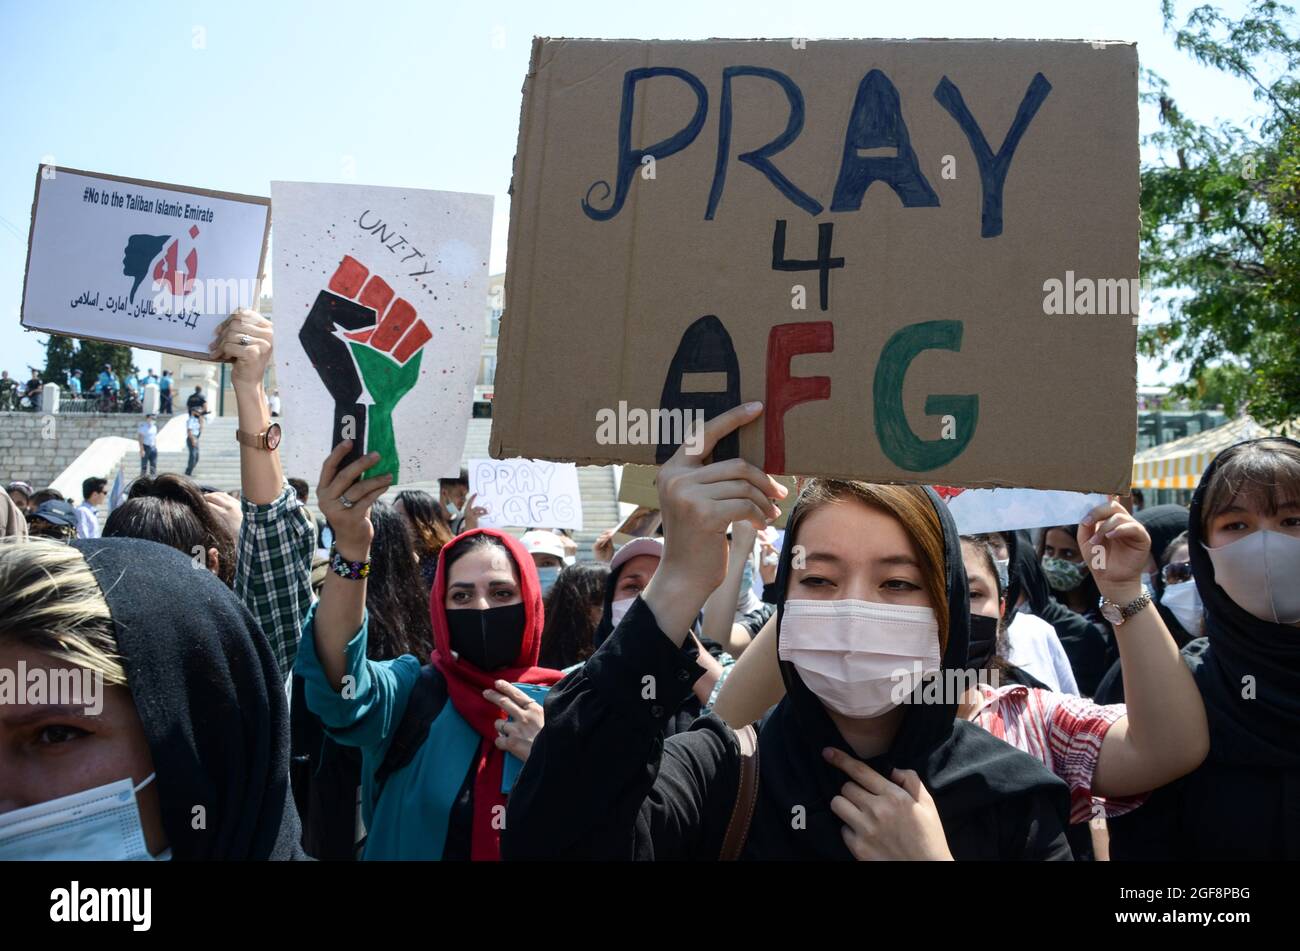 Los refugiados afganos que viven en Grecia protestan contra los talibanes que retoman el control de su país, el 19 de agosto de 2021 en Atenas, Grecia. Foto de stock